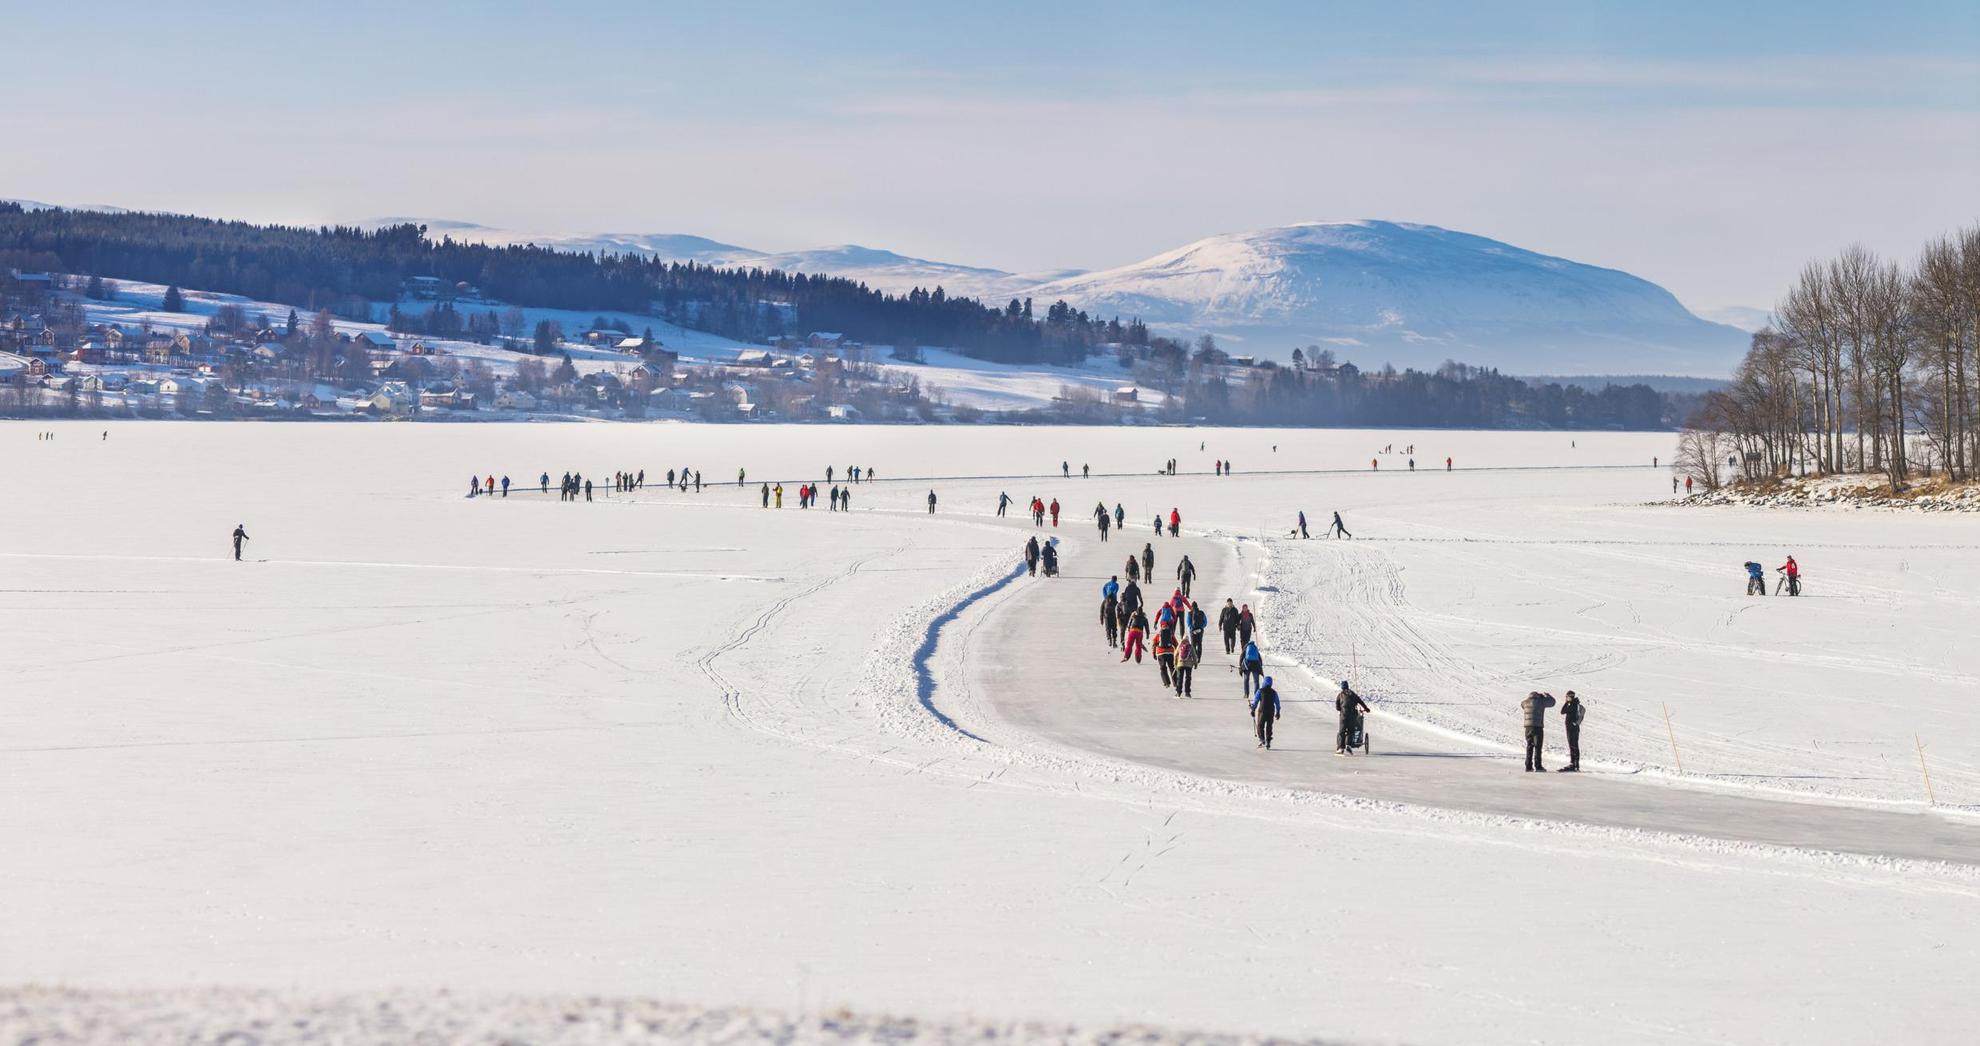 Plusieurs personnes font du patin à glace sur des pistes préparées sur un lac gelé recouvert de neige. Les maisons, les arbres et les montagnes sont en arrière-plan.